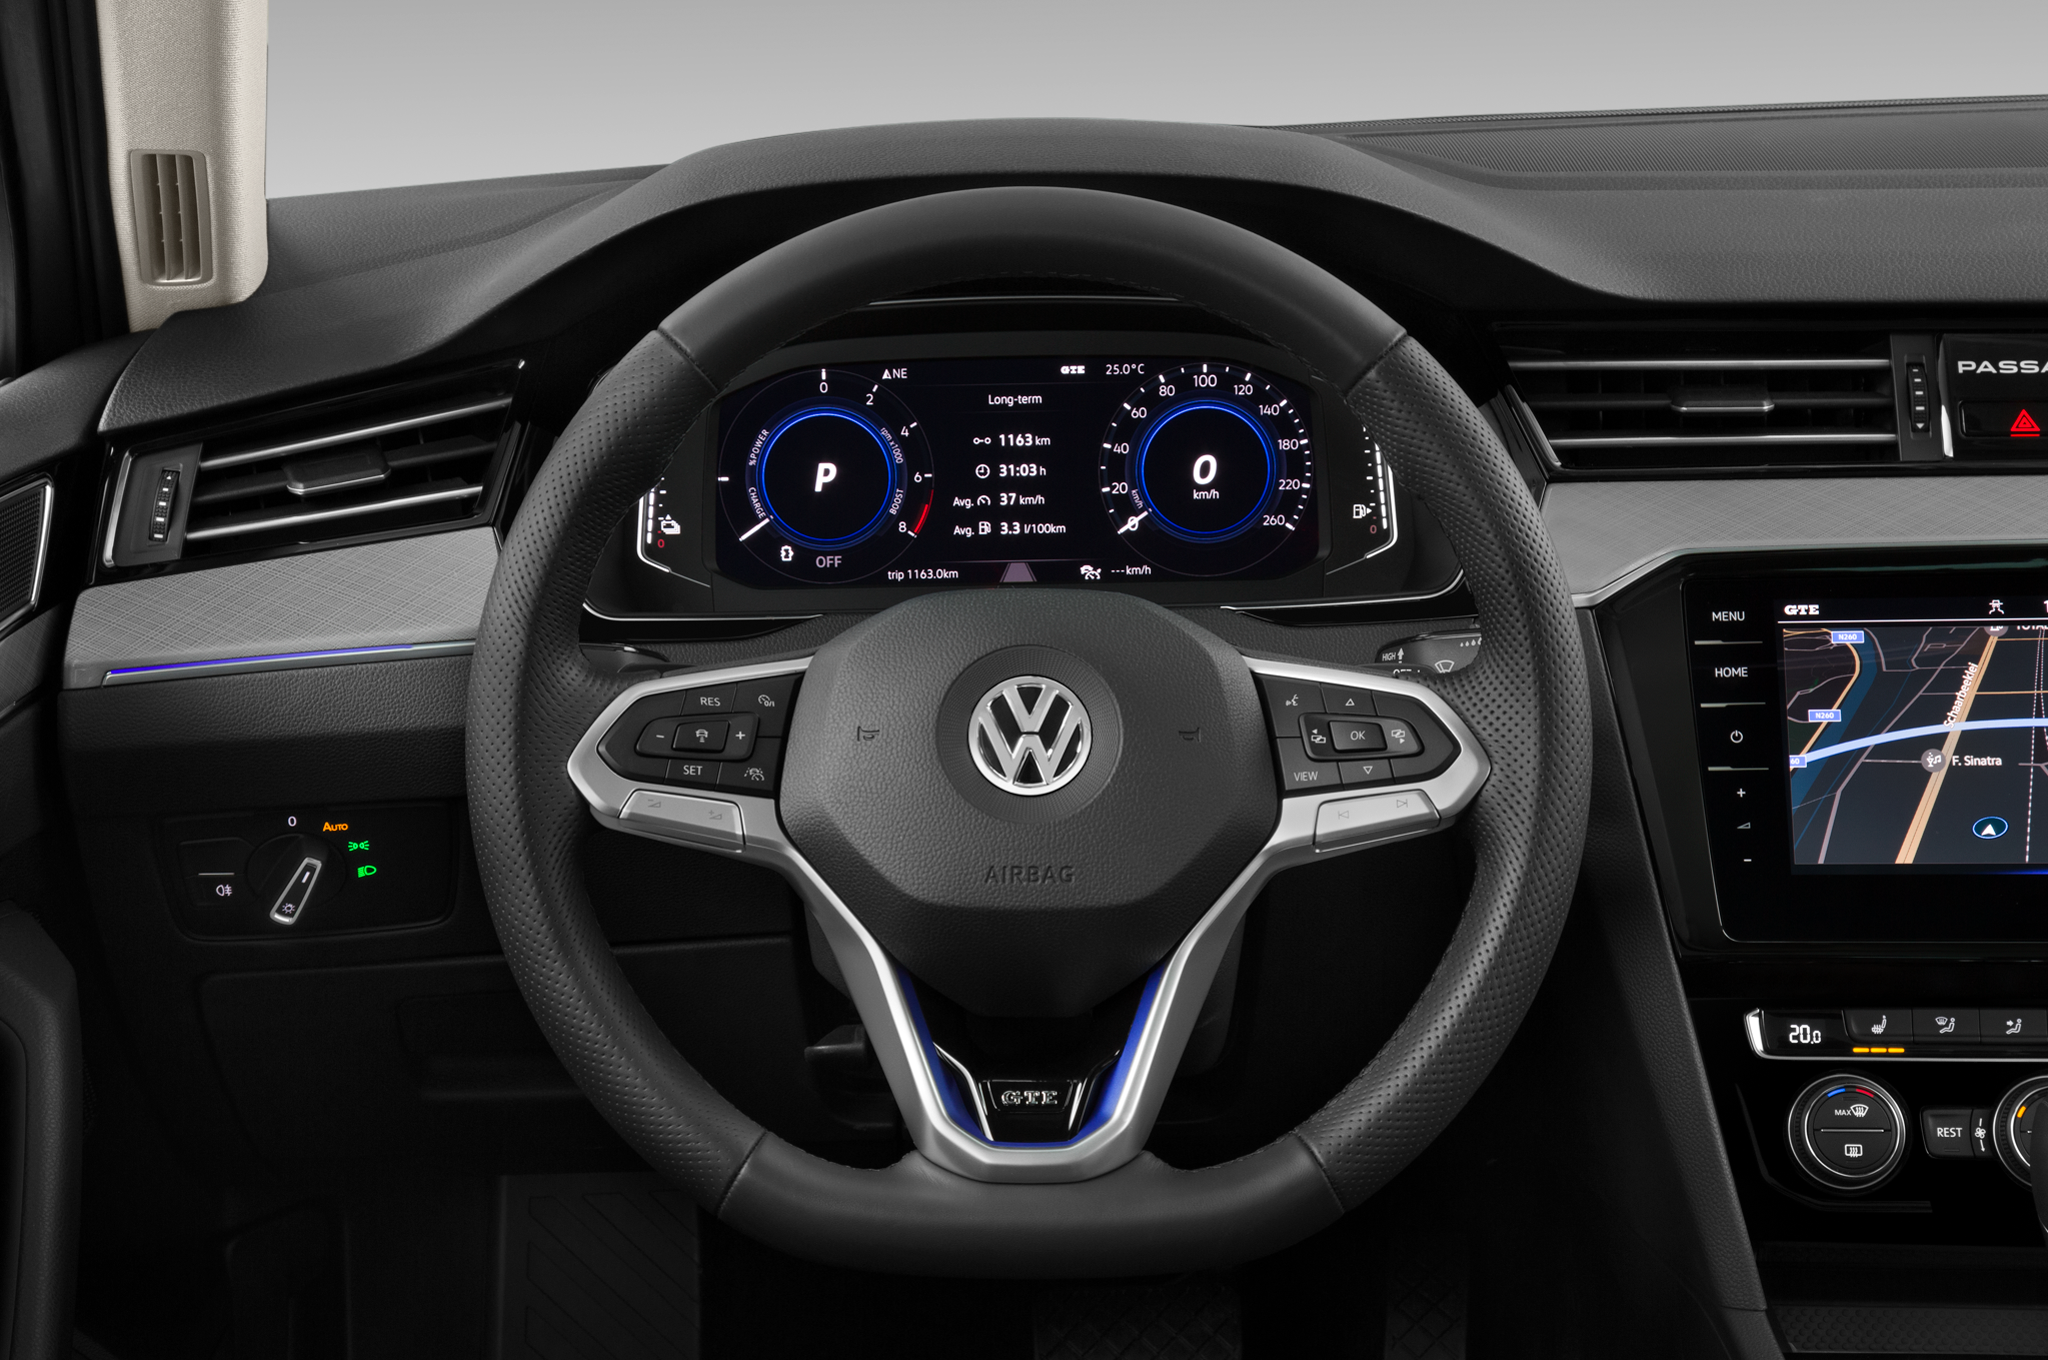 Volkswagen Passat (Baujahr 2020) GTE 5 Türen Lenkrad